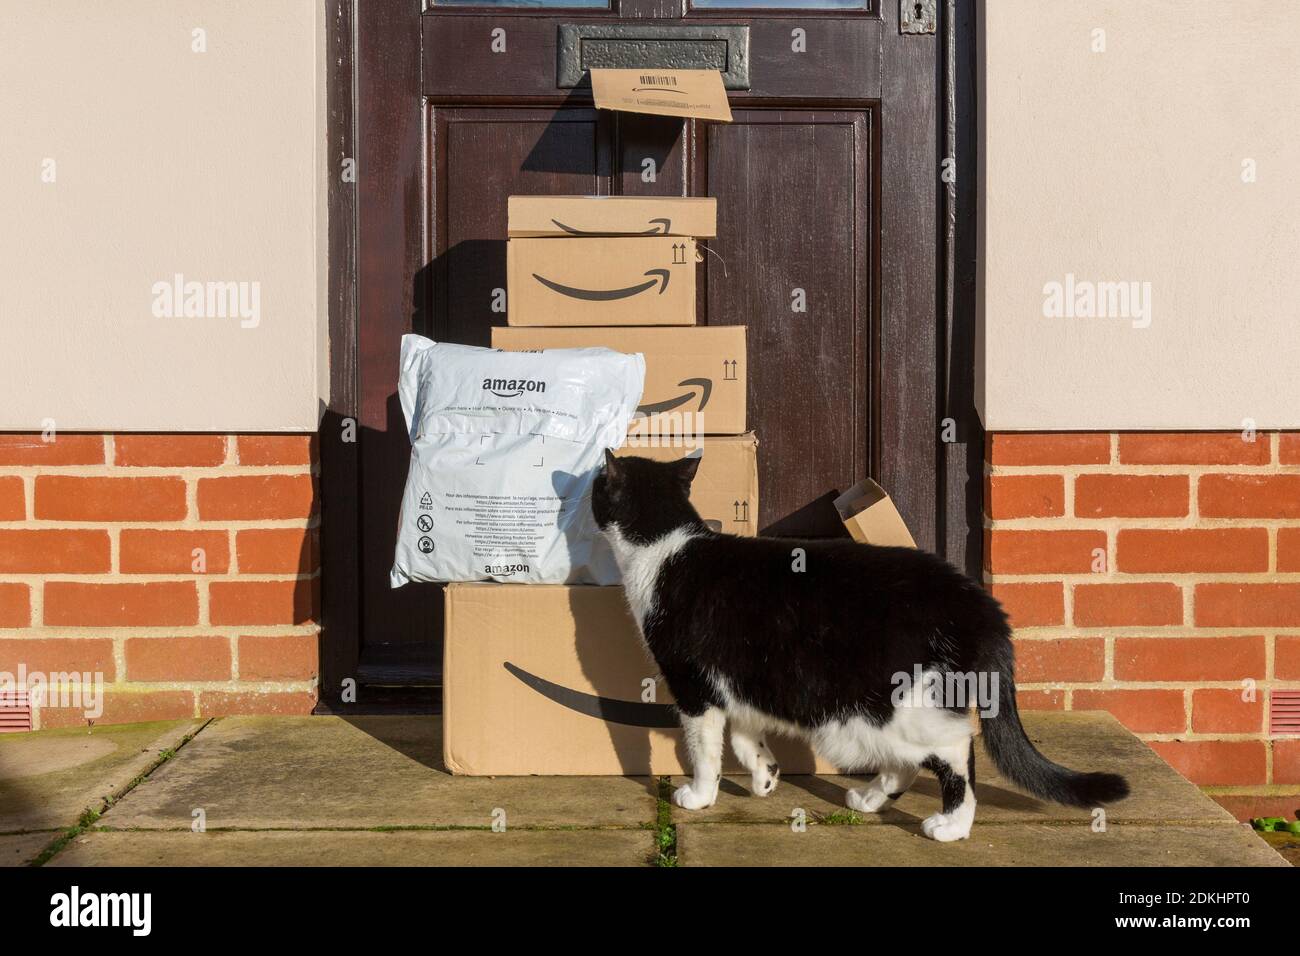 Achats en ligne donc une livraison de colis et boîtes amazon à l'extérieur d'une porte d'entrée avec un chat curieux. Banque D'Images